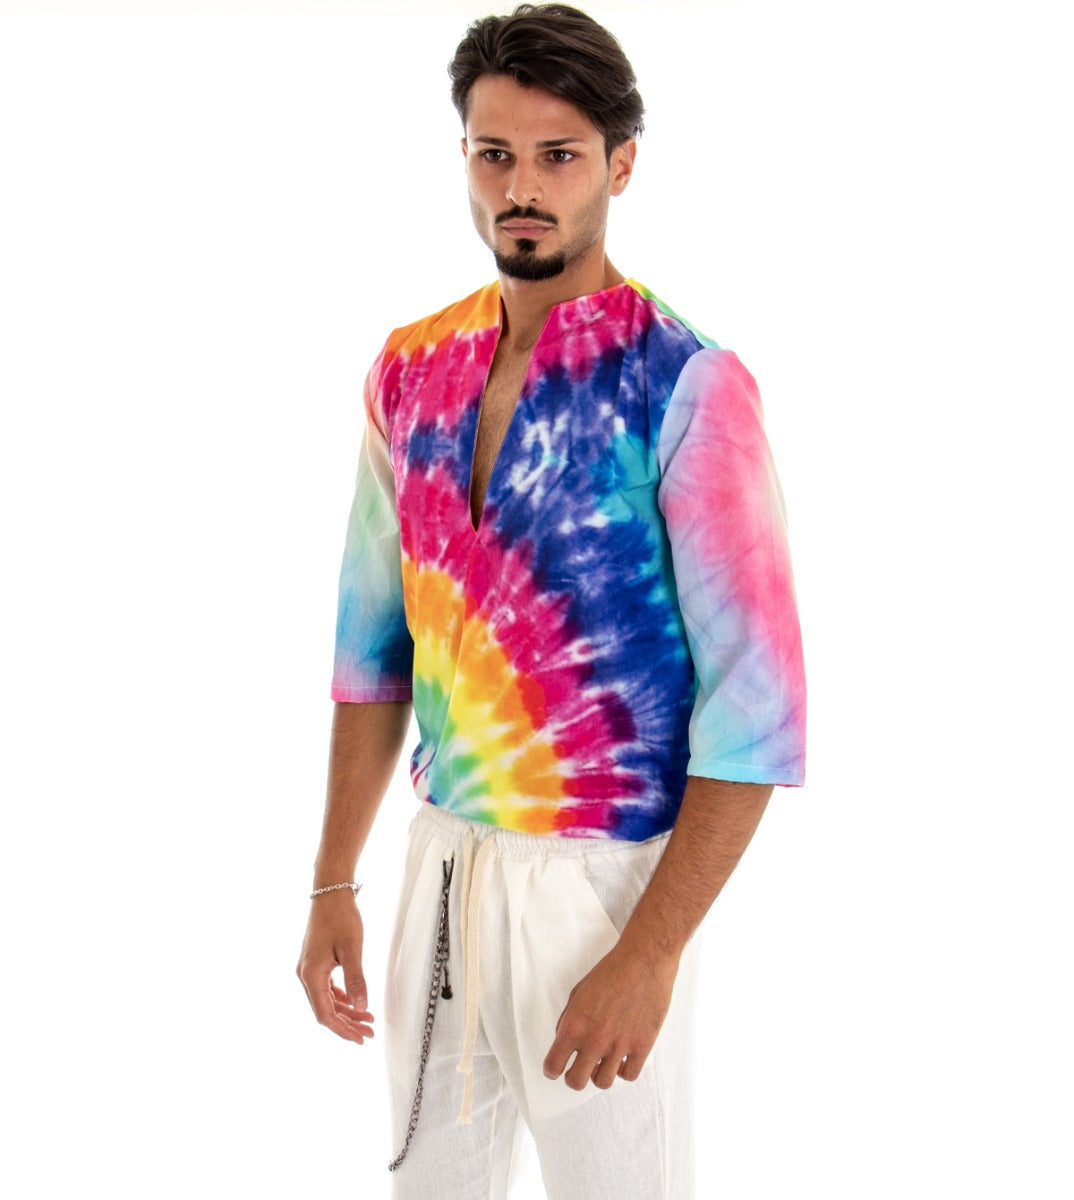 Camicia Uomo Caftano Casacca Fantasia Tie Dye Multicolore Over Tessuto Leggero Viscosa GIOSAL-C1716A